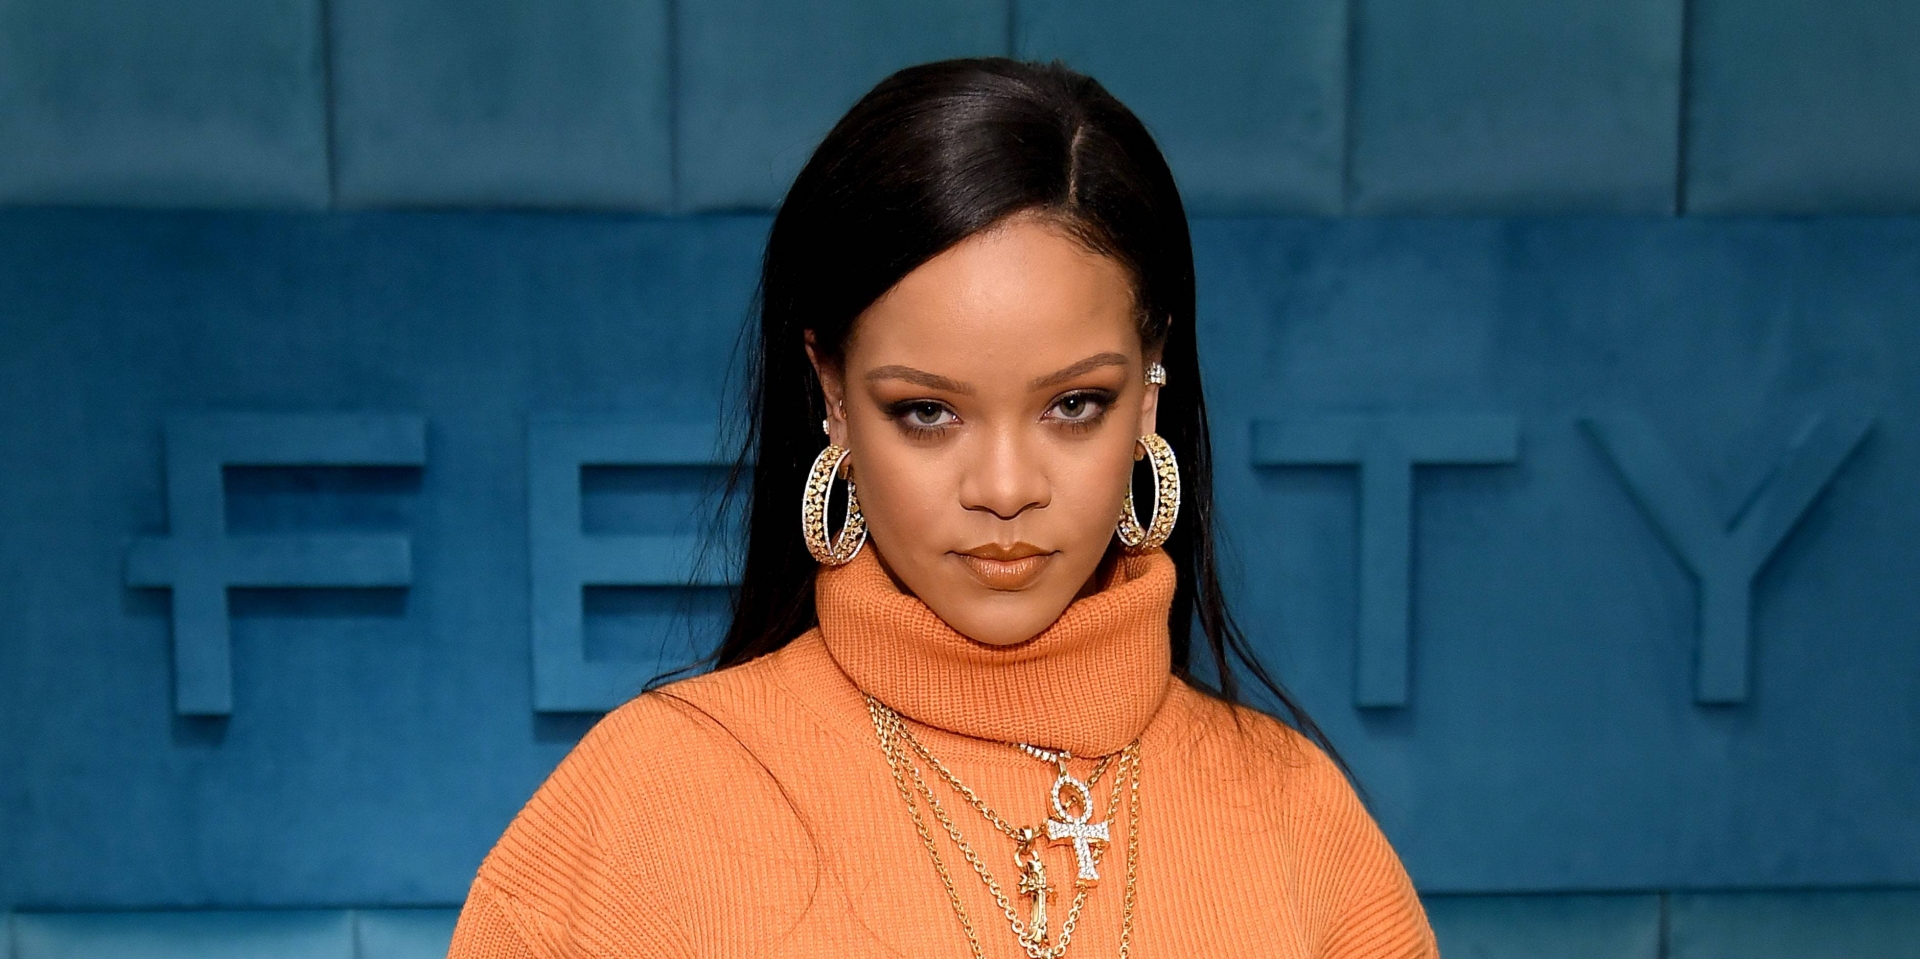 Mặc dù nổi tiếng là ca sĩ nhưng thu nhập của Rihanna phần lớn đến từ hoạt động kinh doanh với các thương hiệu nổi tiếng như mỹ phẩm Fenty Beauty và nội y SavageXFenty. Với khối tài sản 1,7 tỷ USD, Rihanna đã trở thành nữ tỷ phú đô la ở độ tuổi 33.